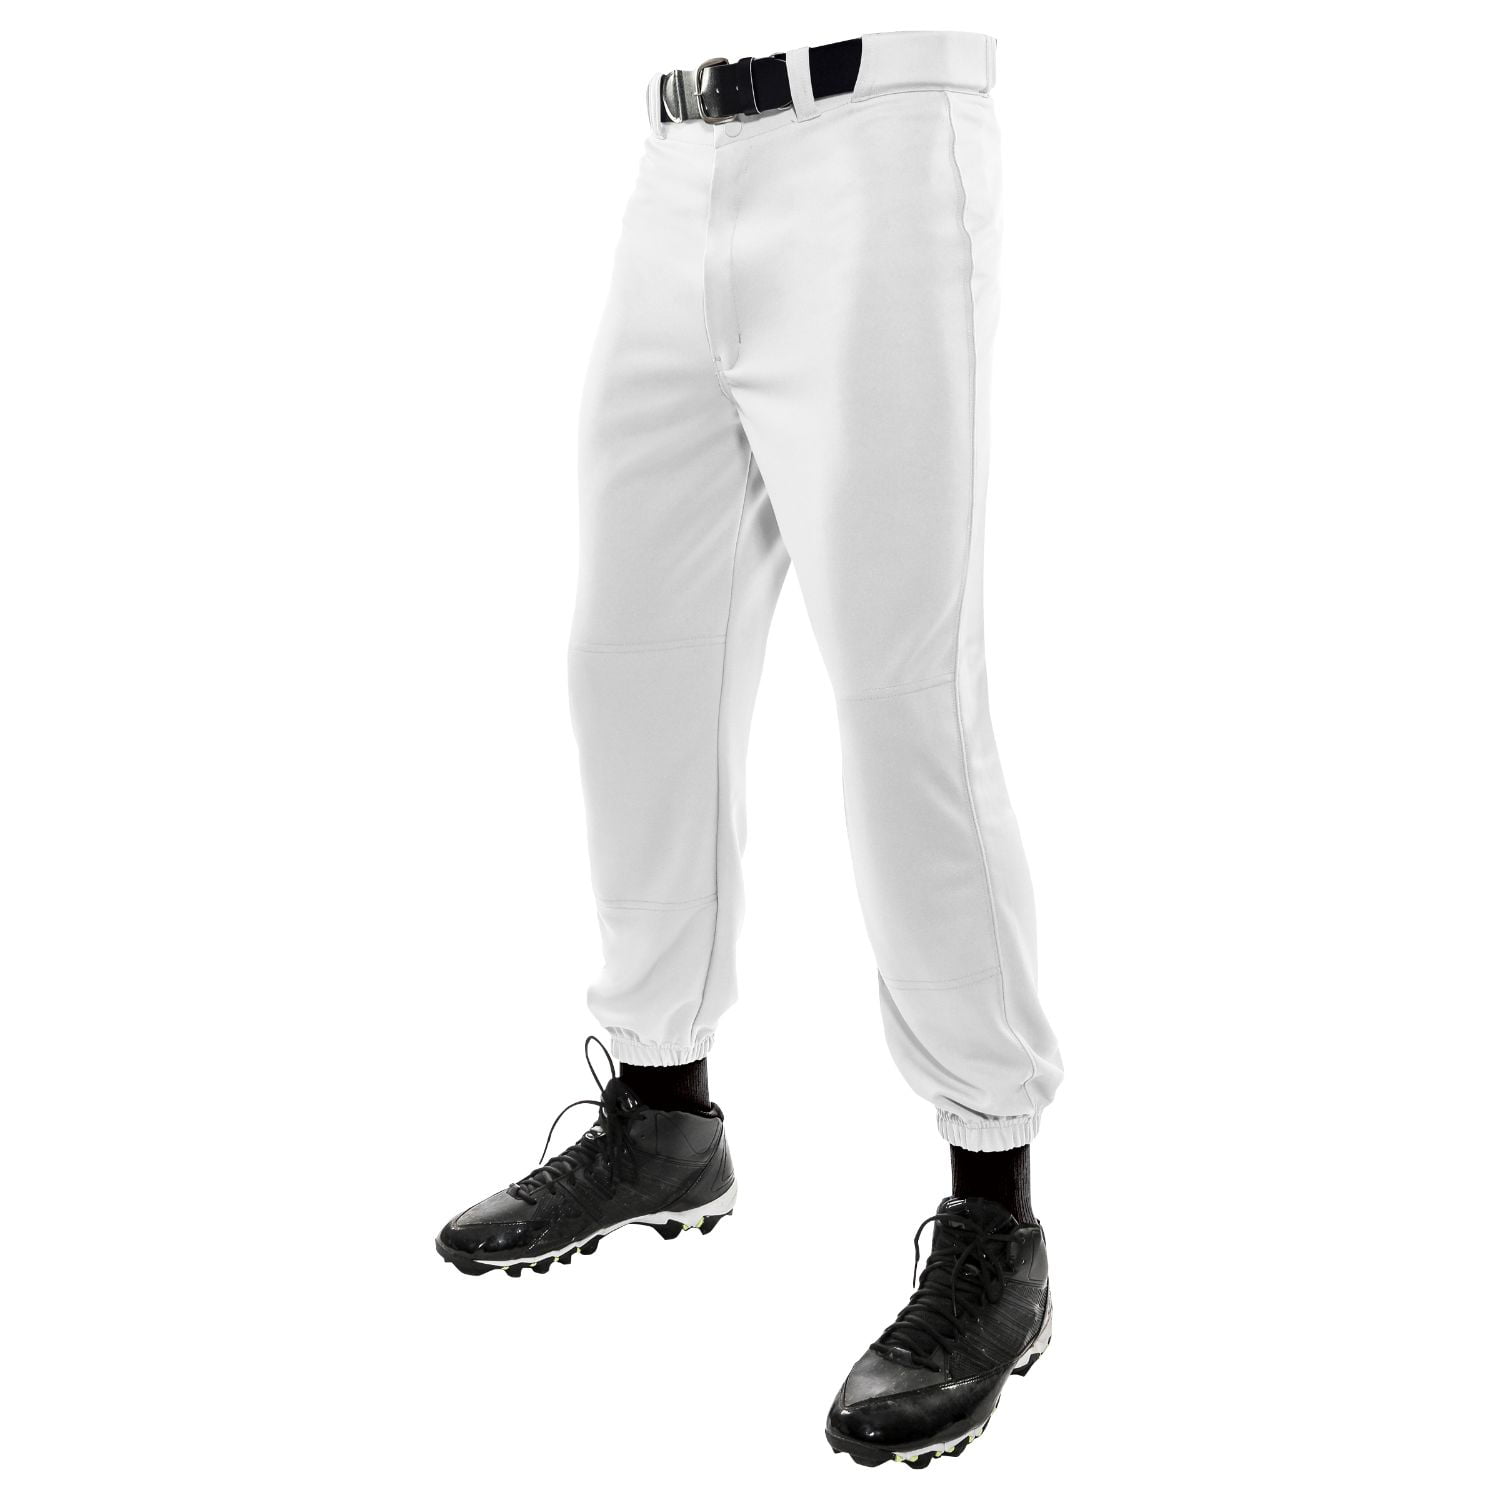 Champro NU Classic Youth Baseball Pants White Medium